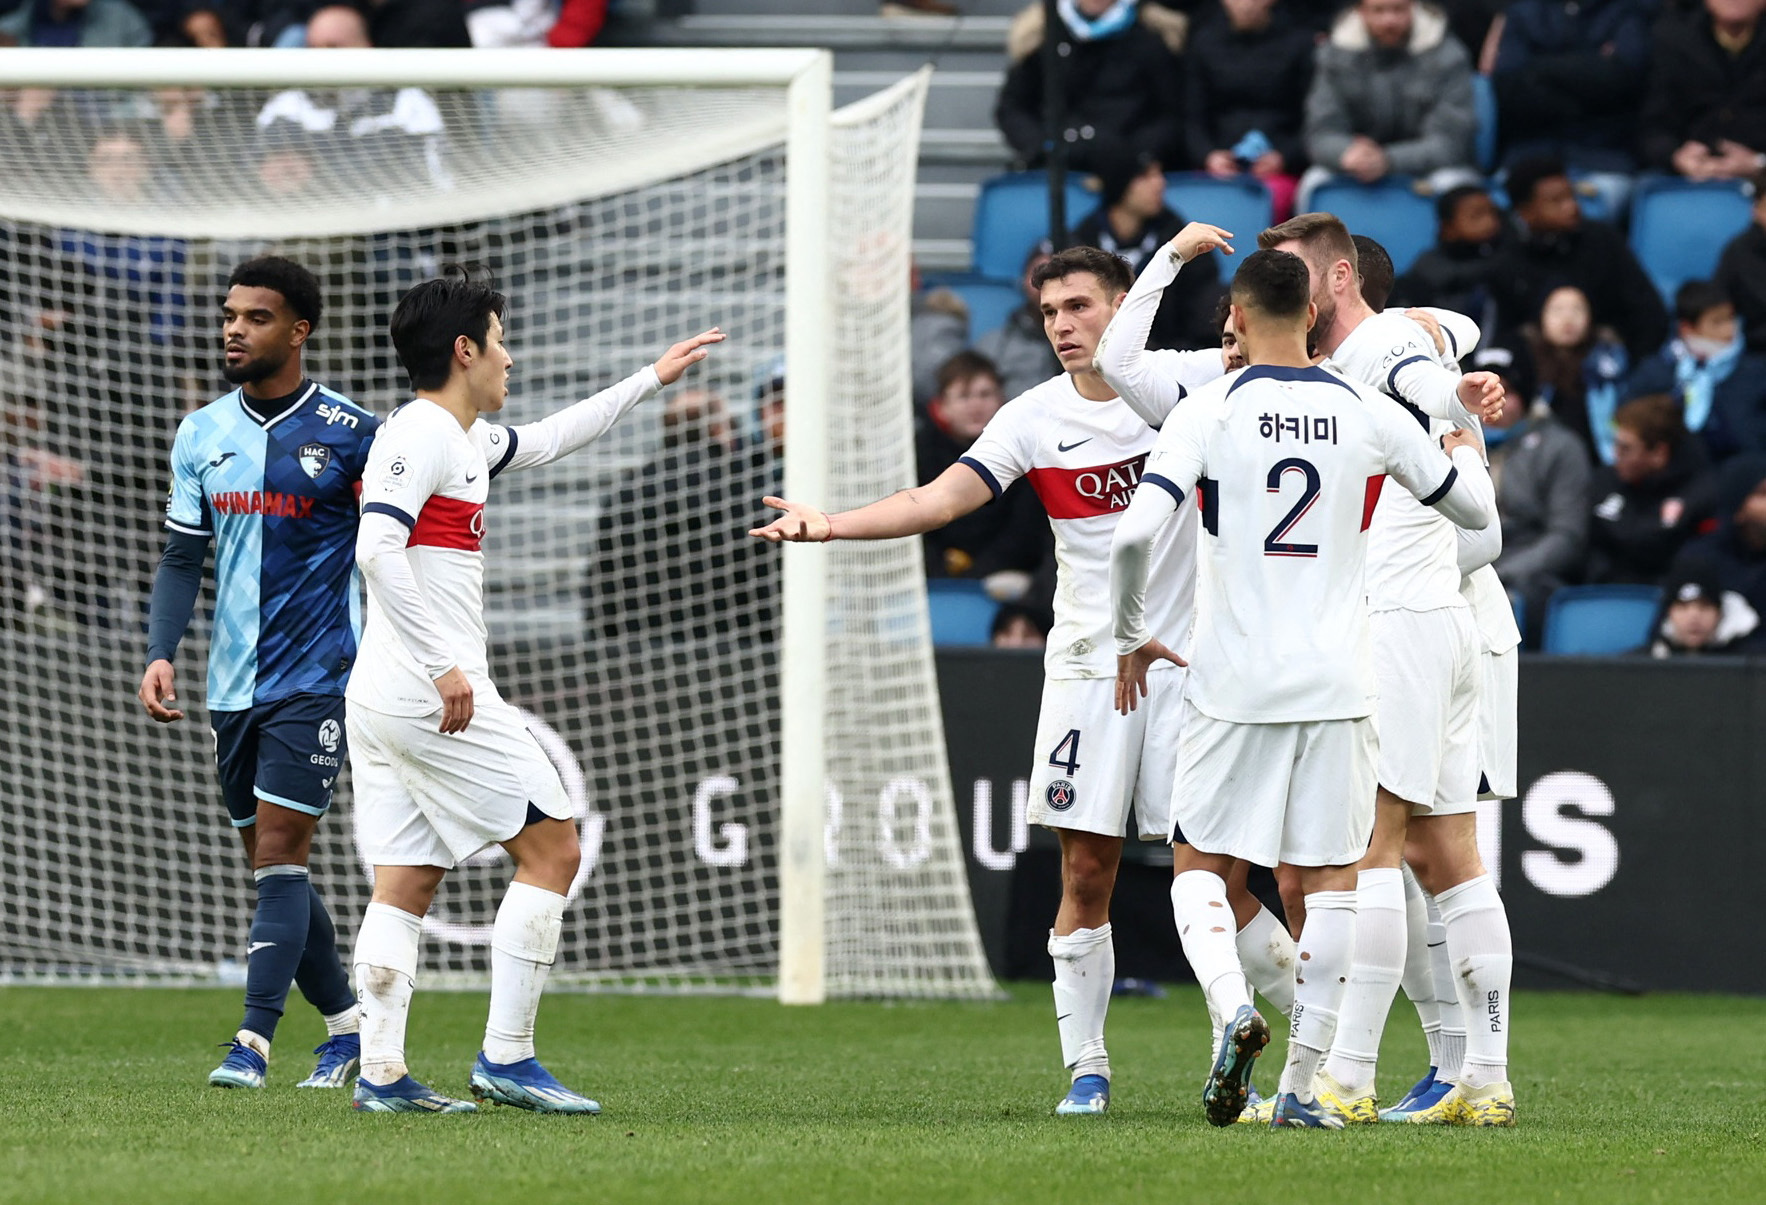 Χάβρη – Παρί Σεν Ζερμέν 0-2: Πήραν τη νίκη με 10 ποδοσφαιριστές οι Παριζιάνοι